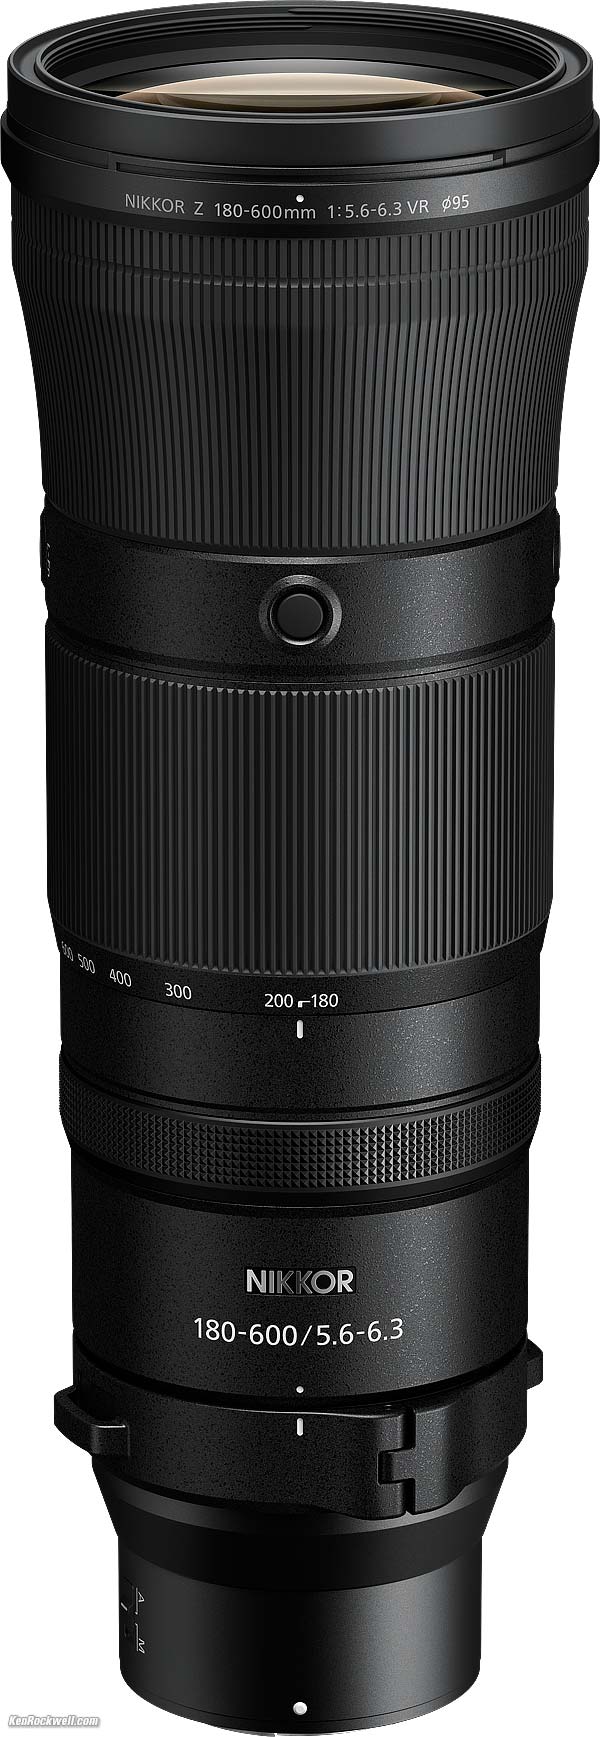 Nikon Z 180-600mm f/5.6-6.3 Review